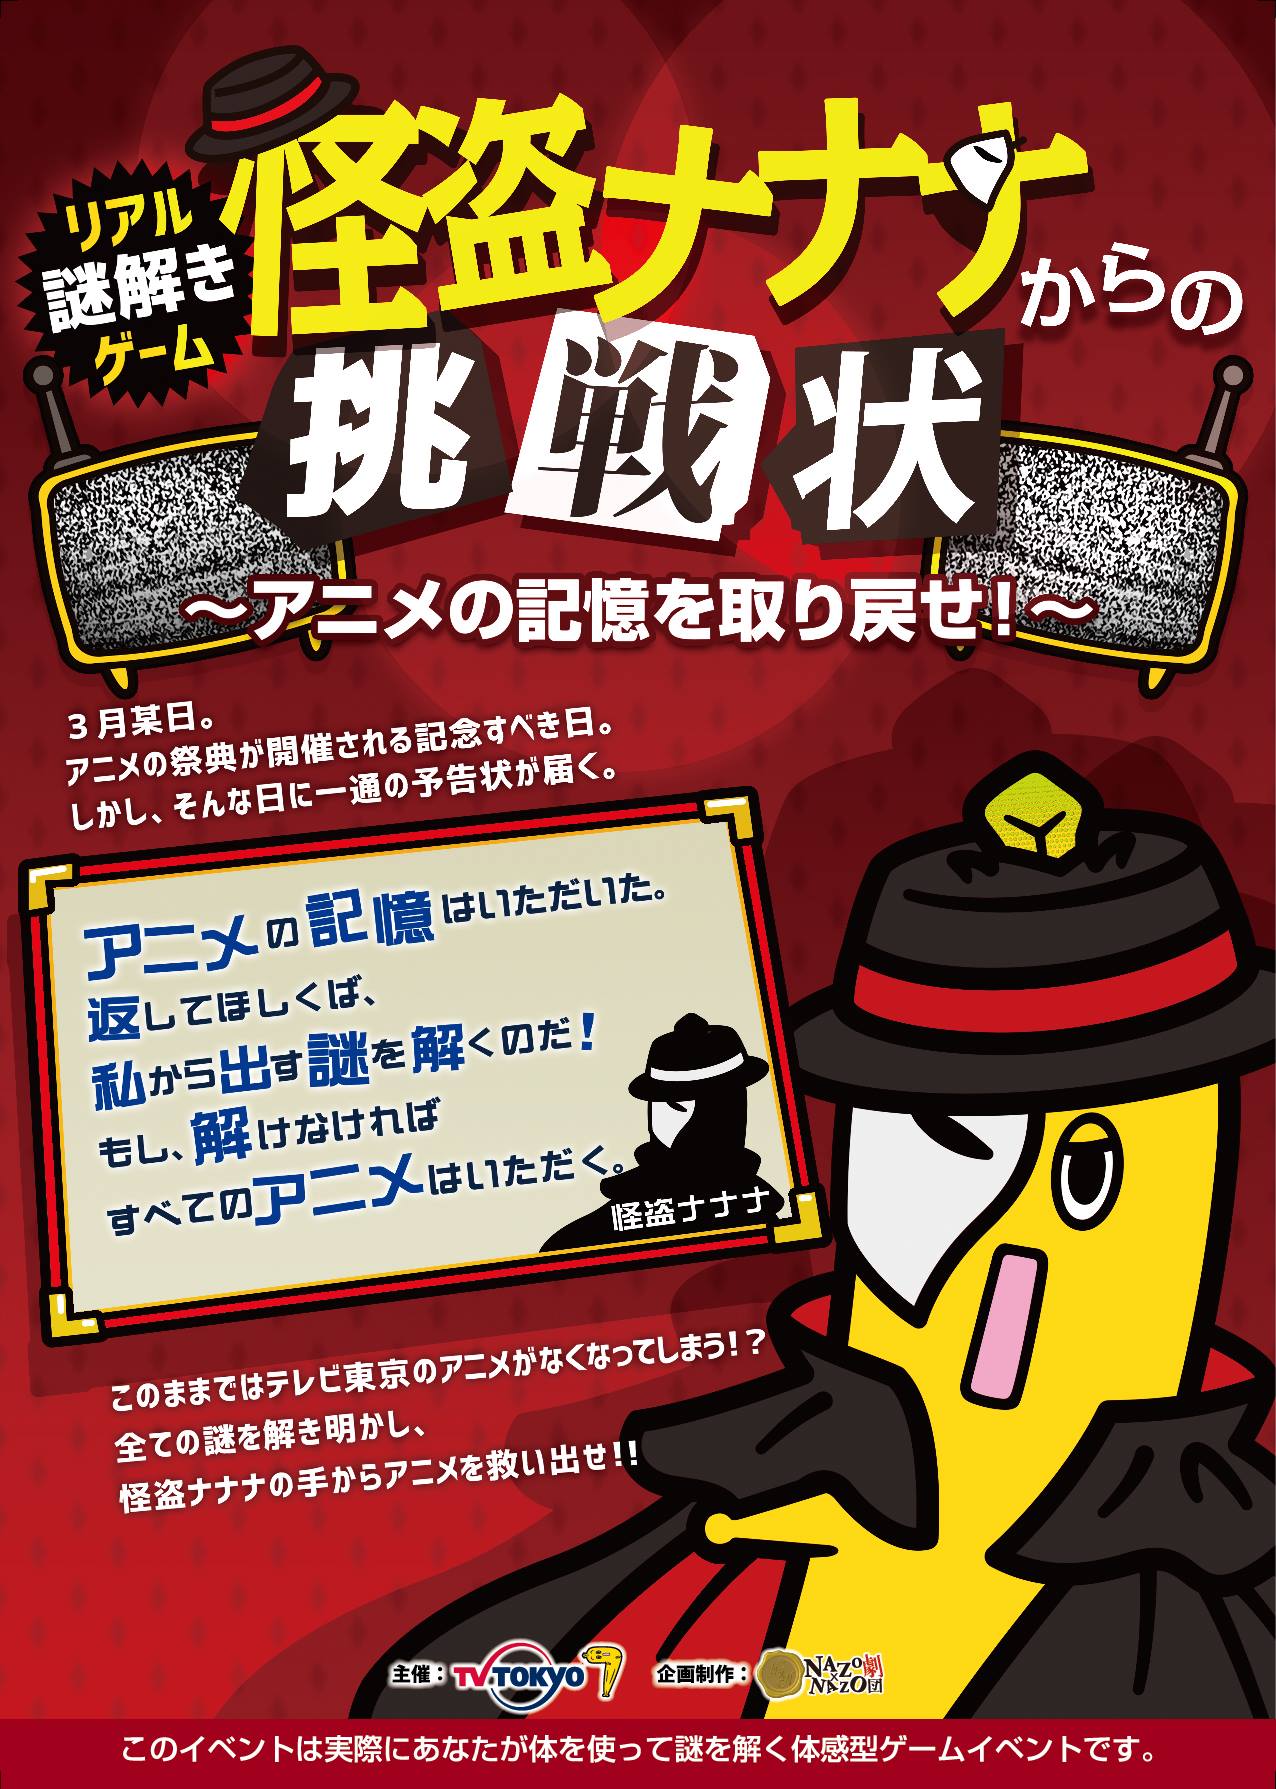 日本最大級のアニメイベント Animejapan 16 のテレビ東京ブースでリアル謎解きゲーム開催 テレビ東京のアニメがなくなってしまう 怪盗ナナナからの挑戦状 株式会社ハレガケのプレスリリース